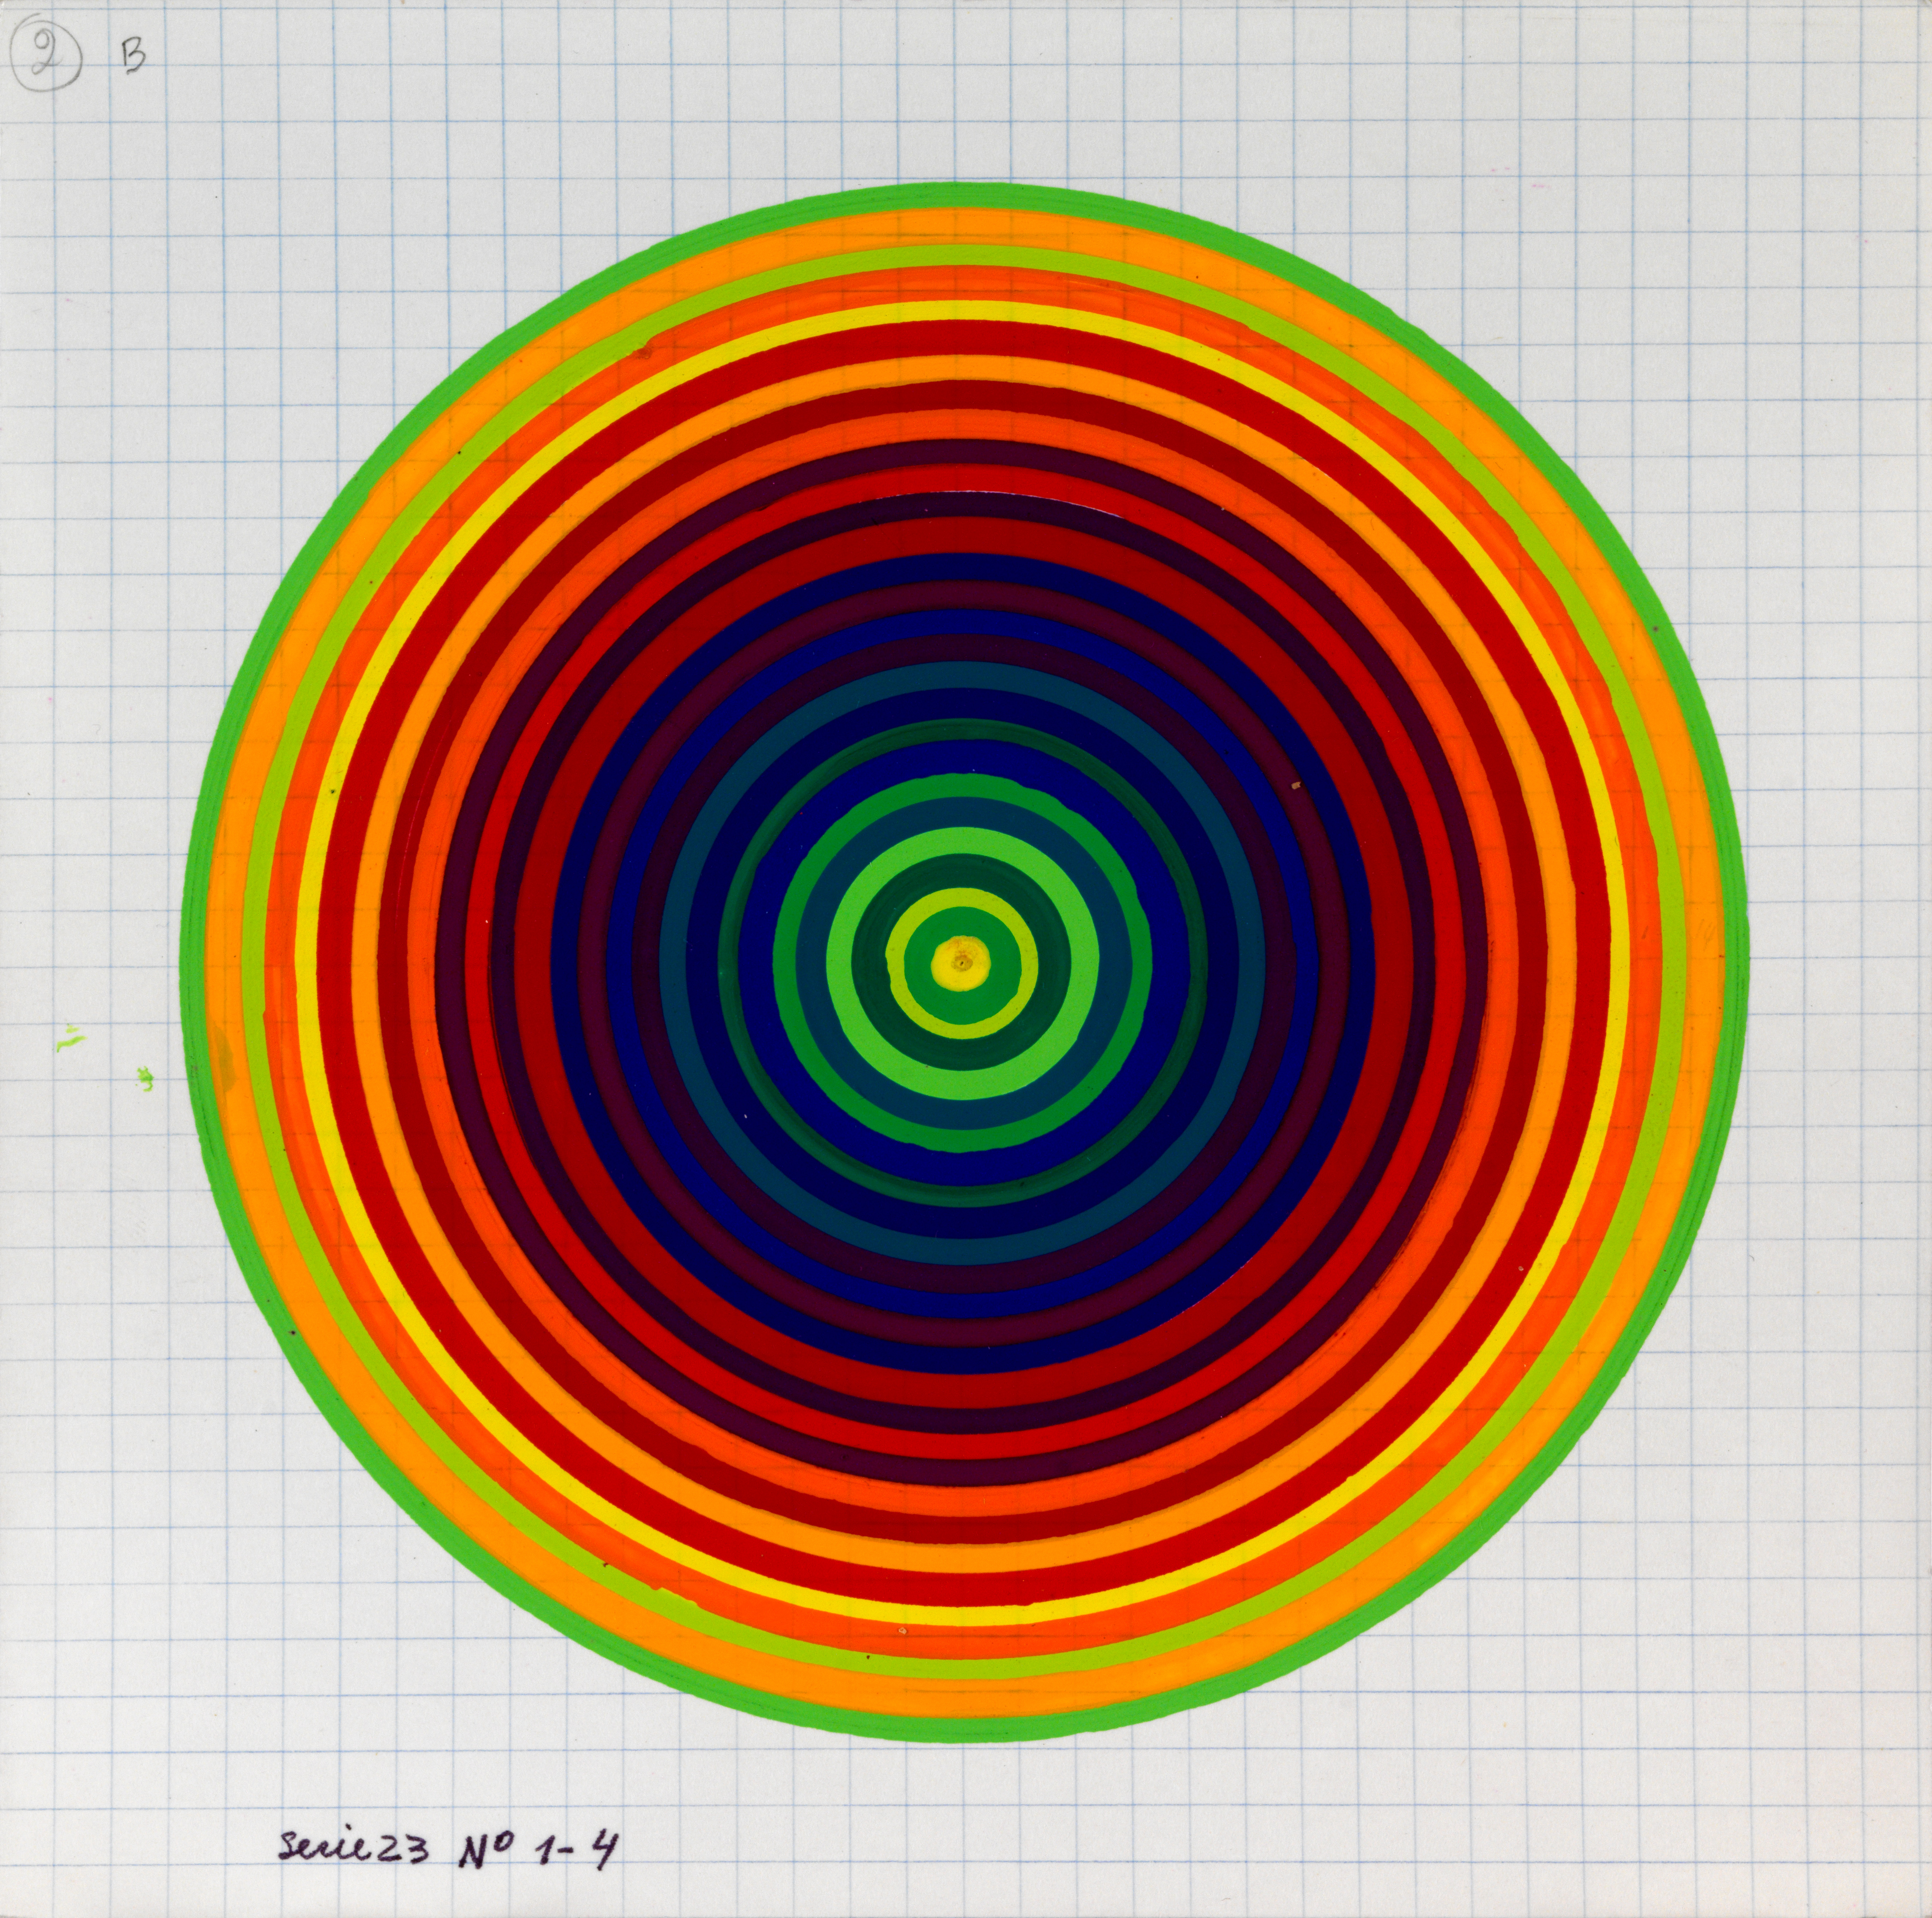 Julio Le Parc, Surface couleur, Cercles, série 23 n°1-4